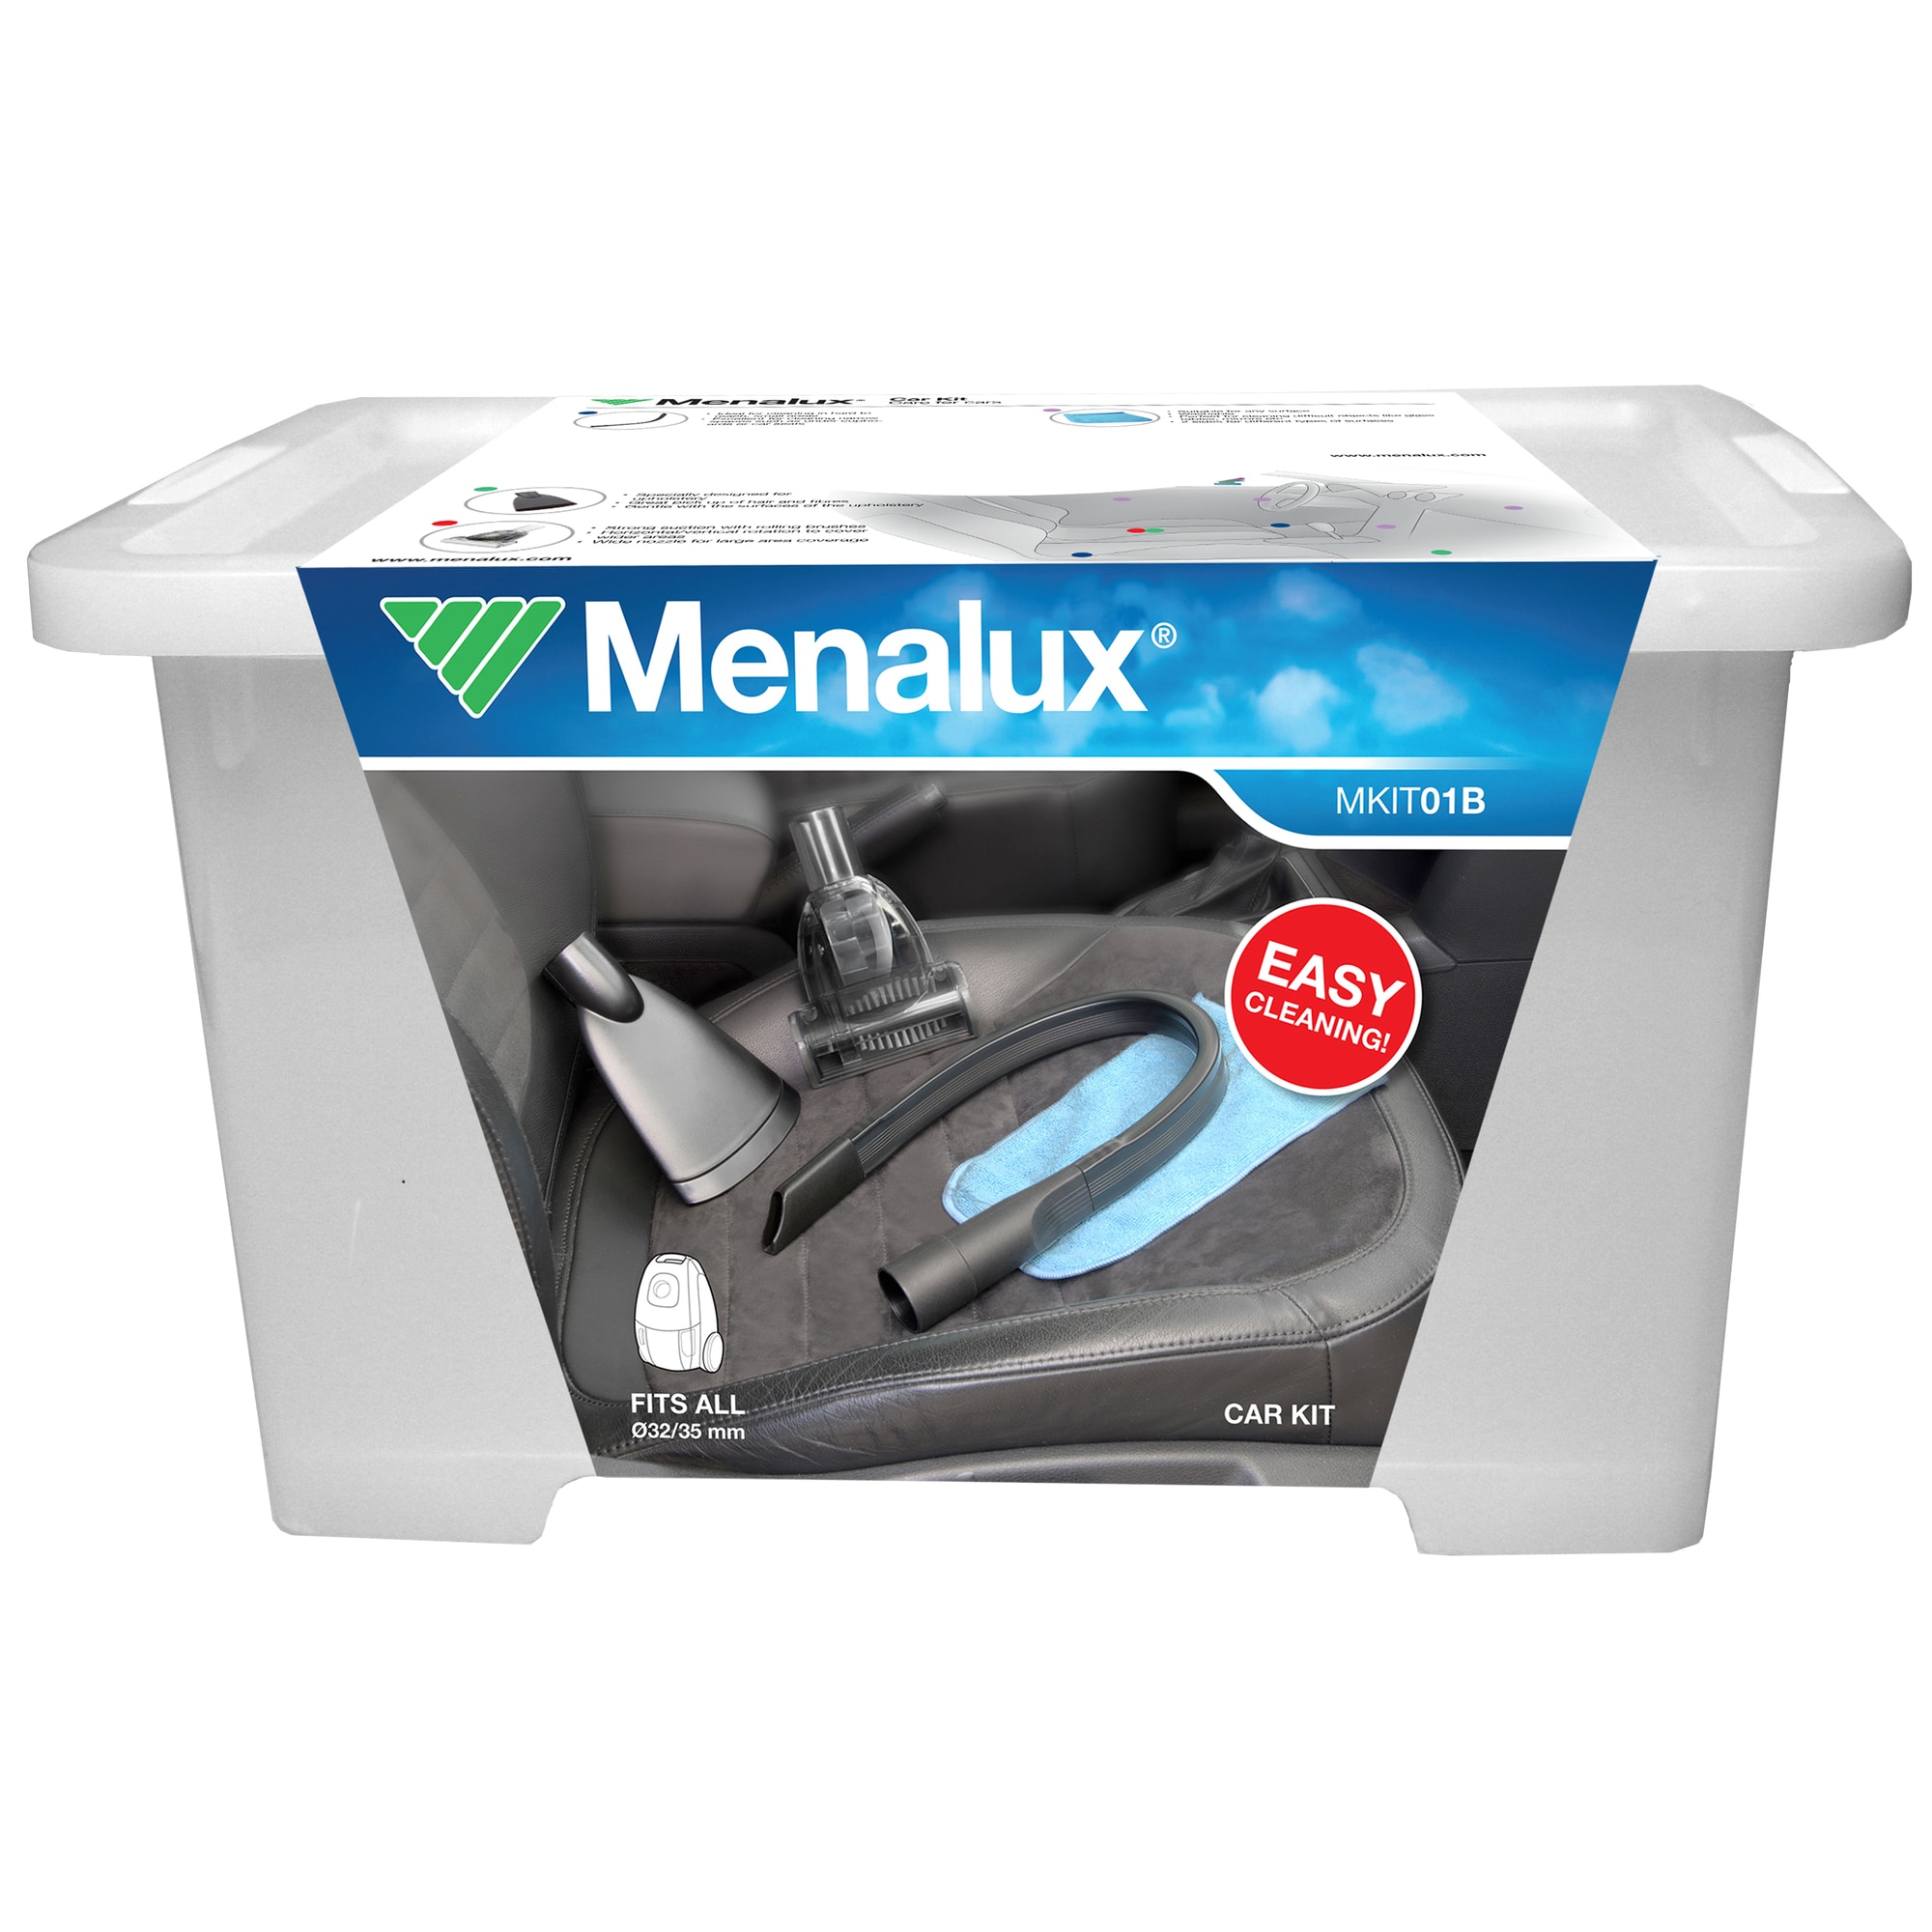 Menalux Auto Care støvsugersæt til bil